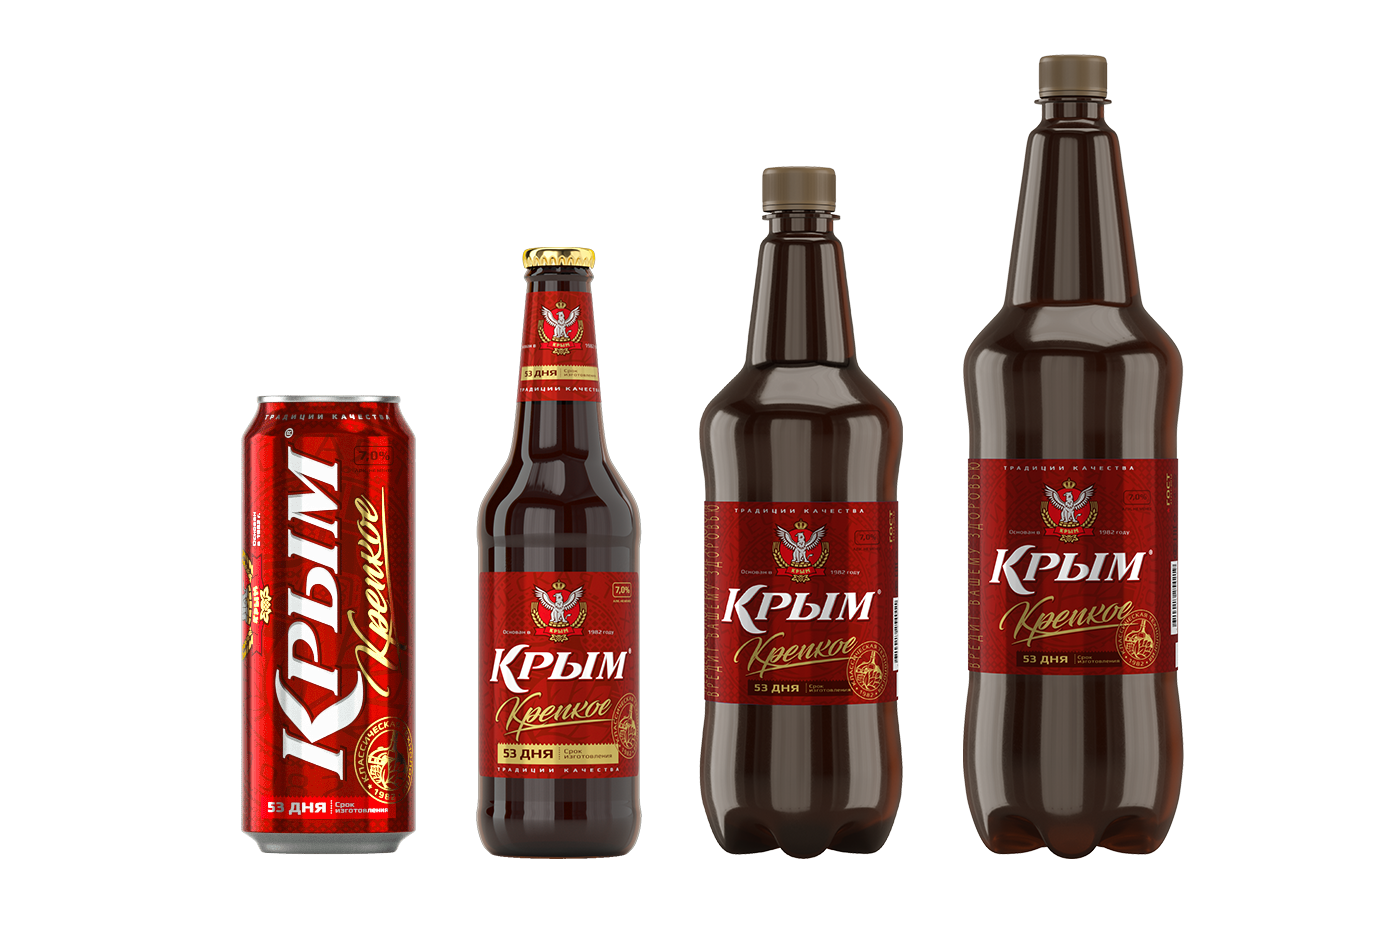 Пиво «Крым Крепкое»